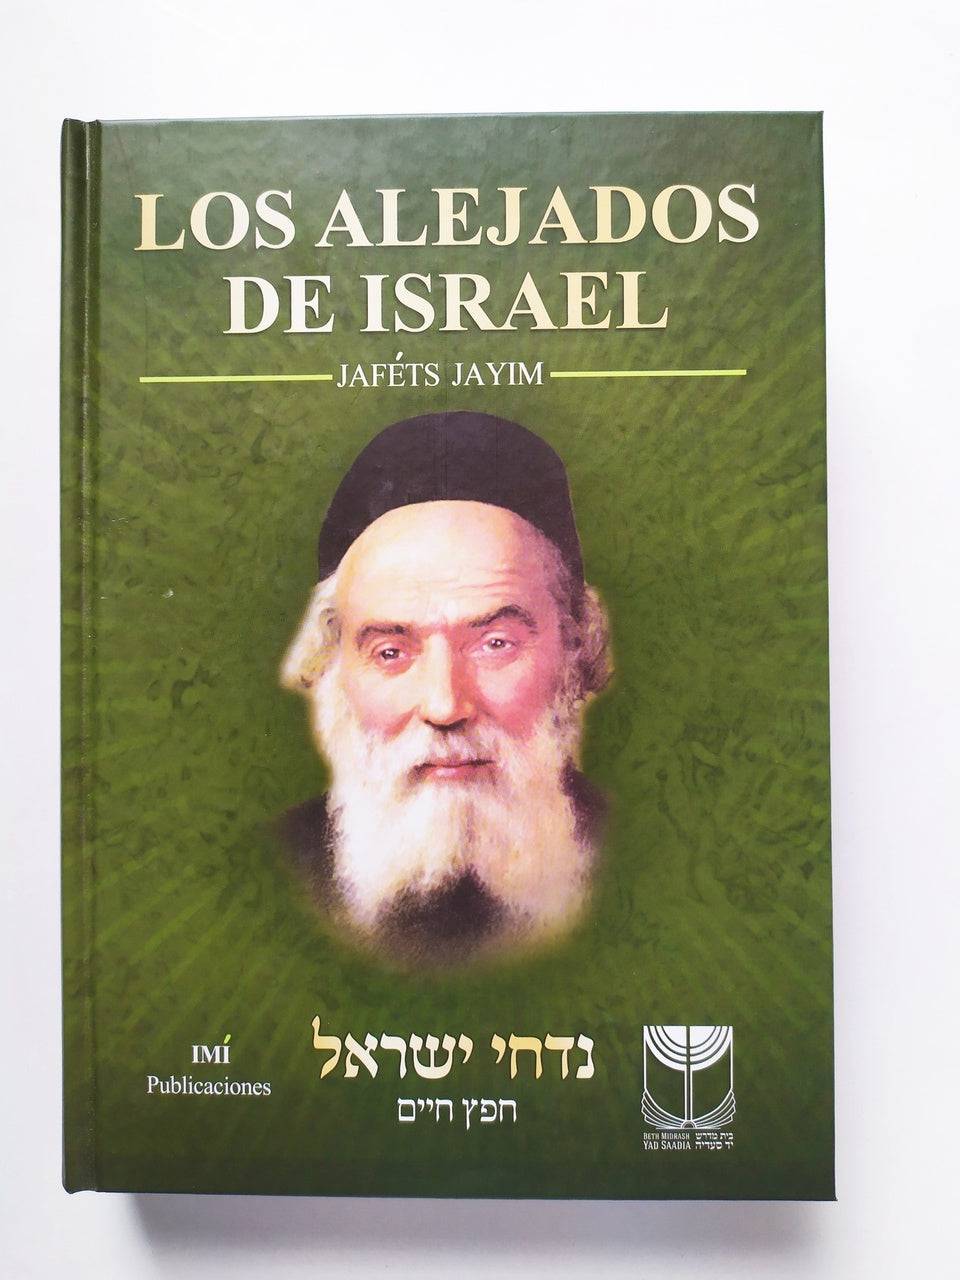 Los alejados de Israel Jafets Jayim - Libreria Jerusalem Centro